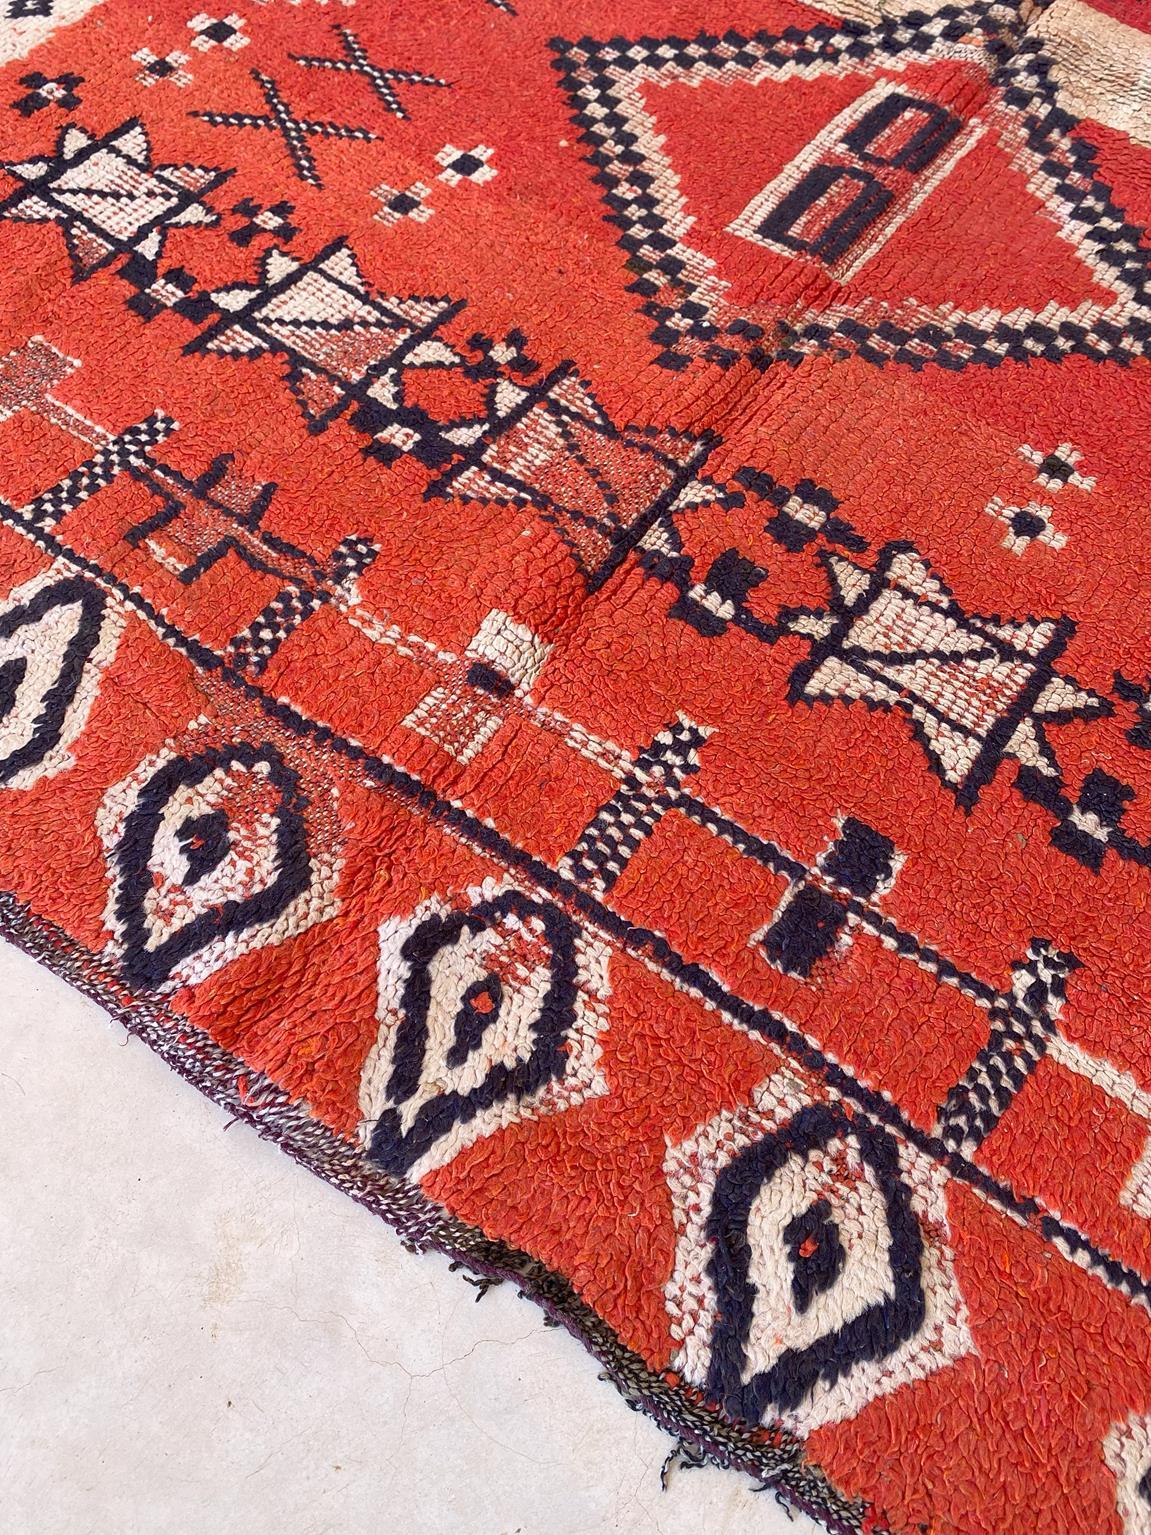 Marokkanischer Boujad-Teppich im Vintage-Stil - Rot - 4x5feet / 124x153cm (20. Jahrhundert)